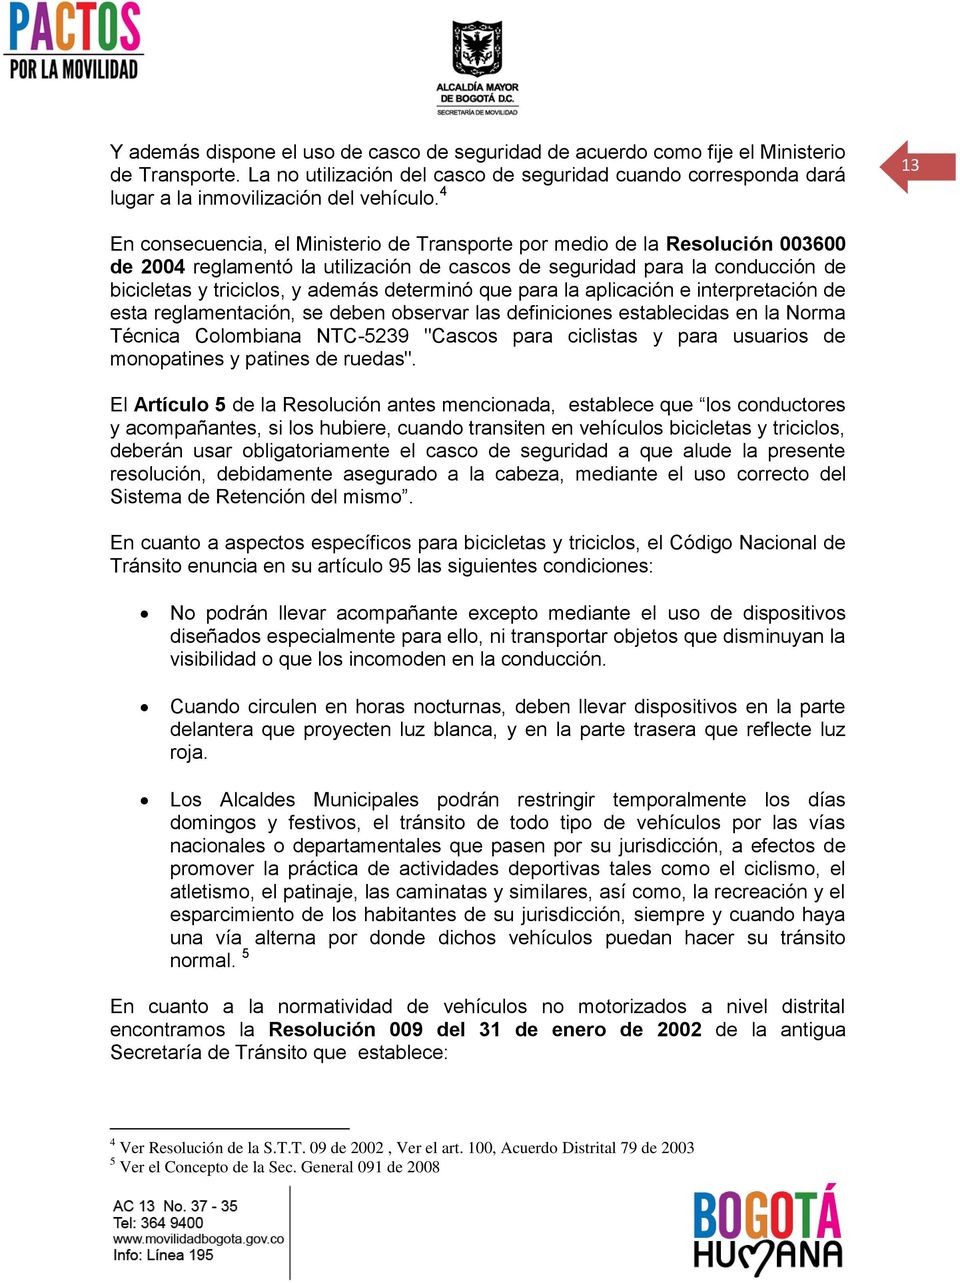 determinó que para la aplicación e interpretación de esta reglamentación, se deben observar las definiciones establecidas en la Norma Técnica Colombiana NTC-5239 "Cascos para ciclistas y para